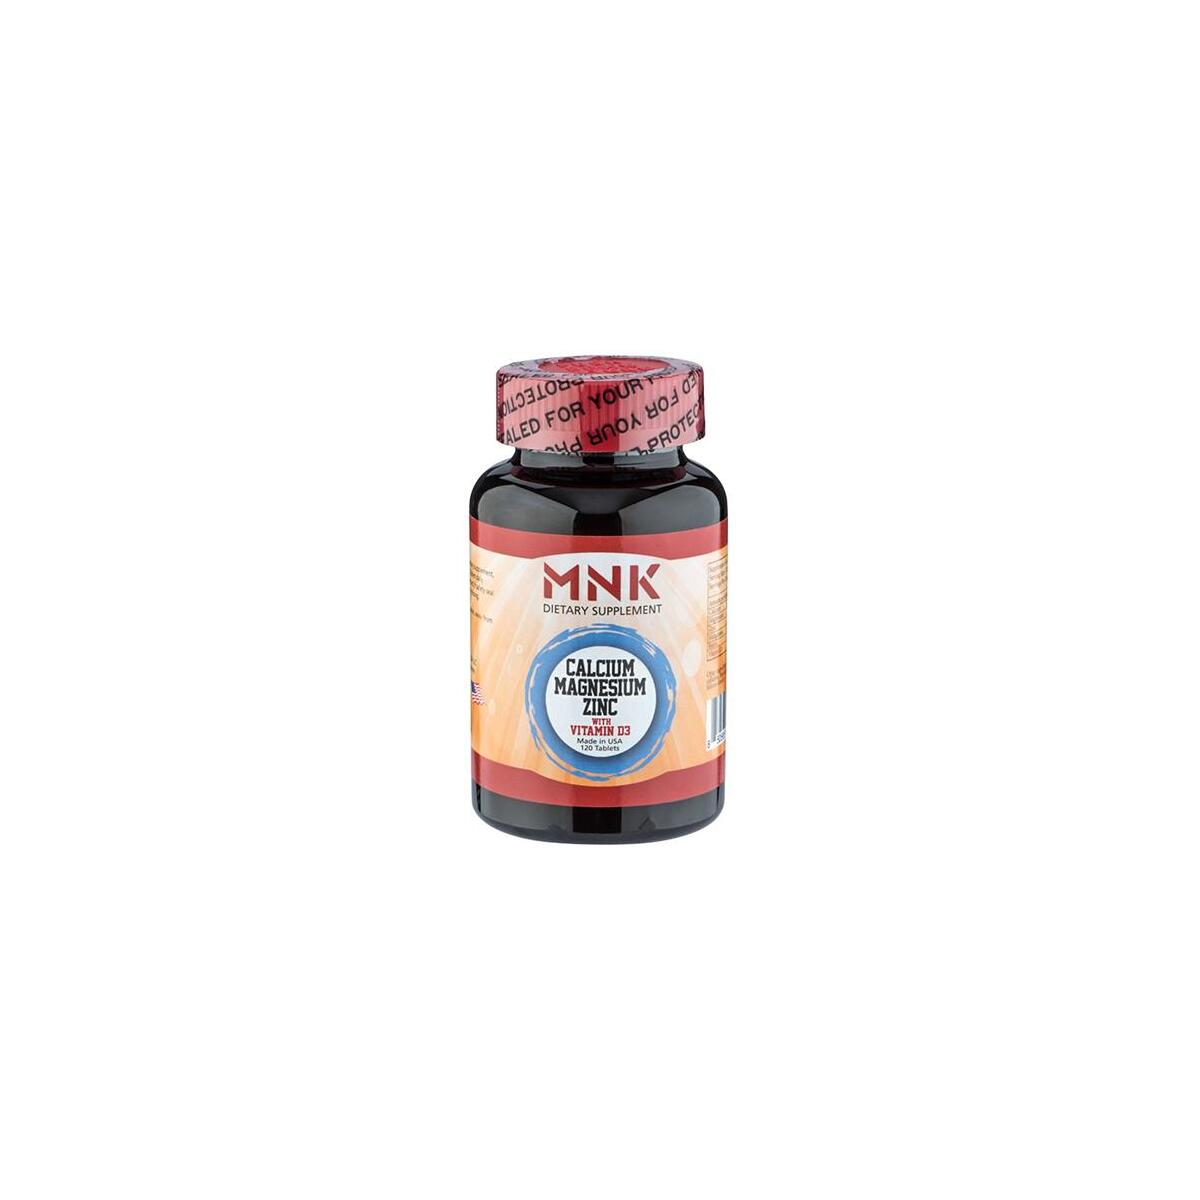 Mnk Calcium Magnesium Zinc Vitamin D3 120 Tablet